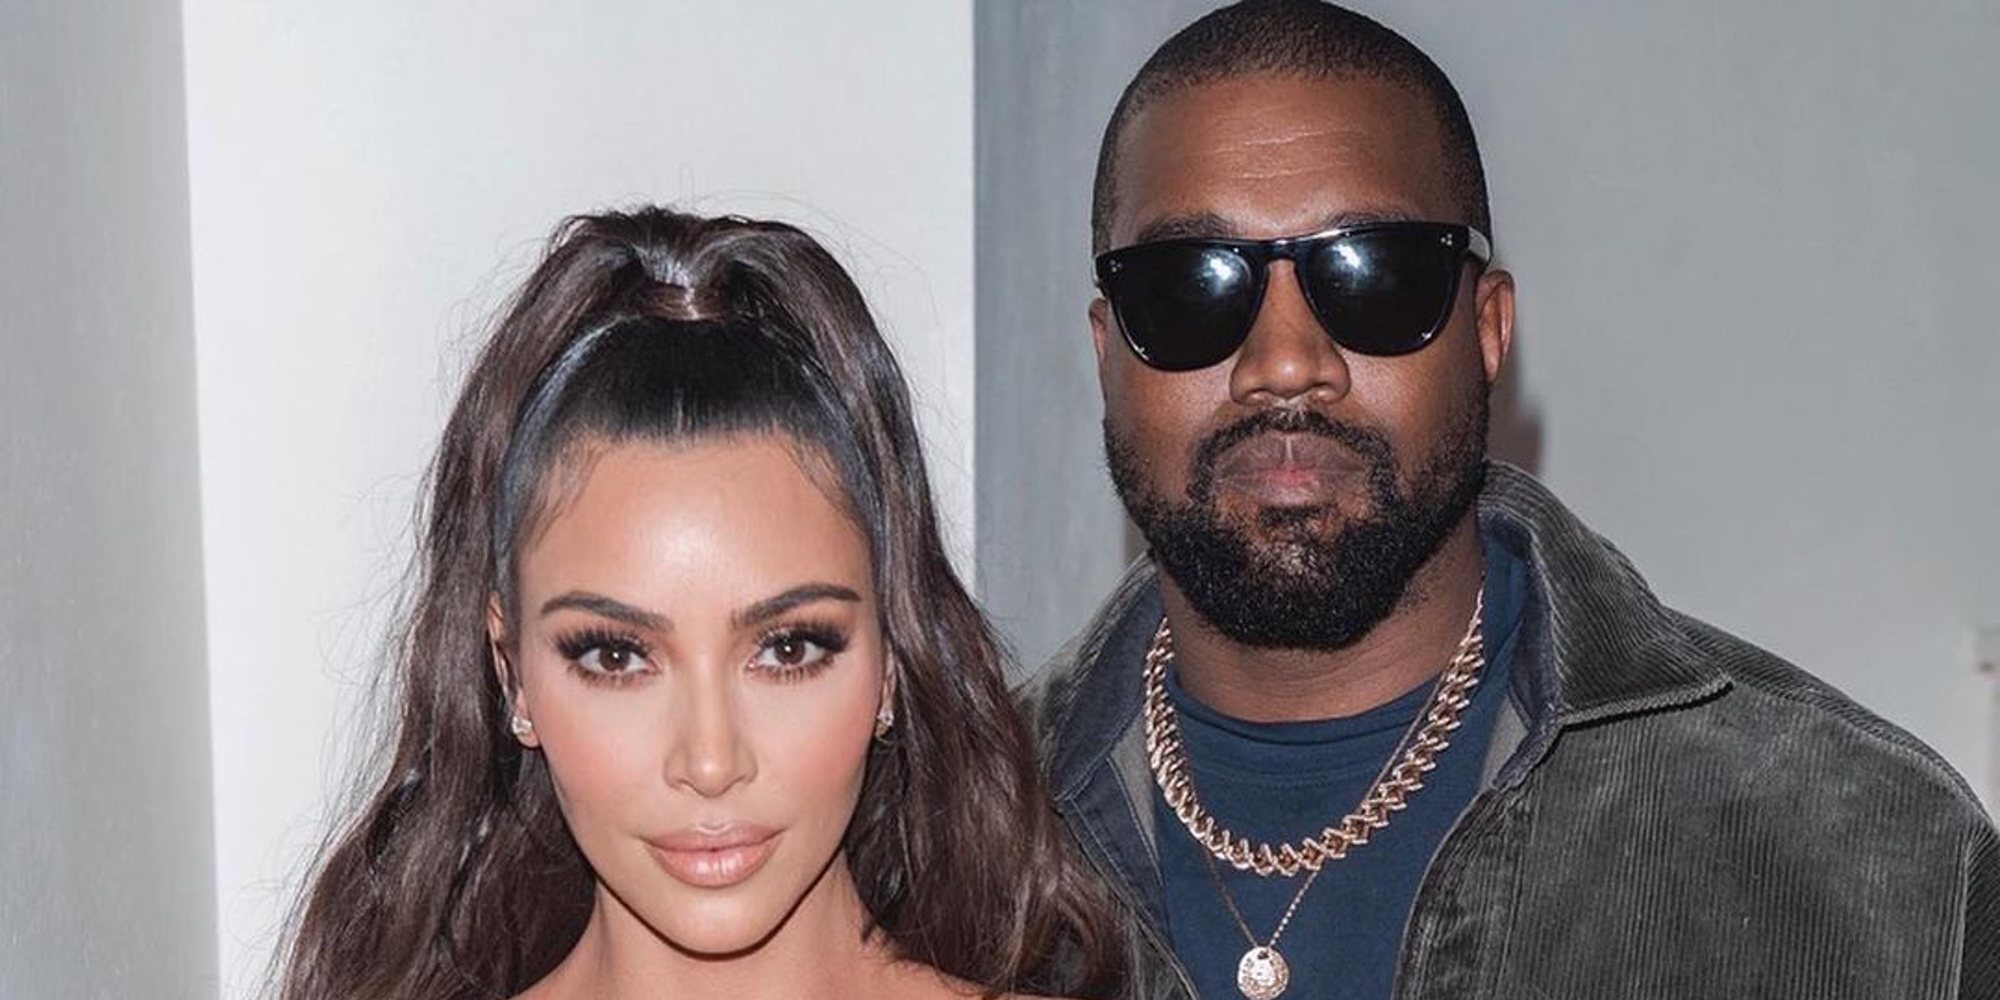 Siguen las reformas en la casa de Kim Kardashian y Kanye West en medio de los rumores de divorcio